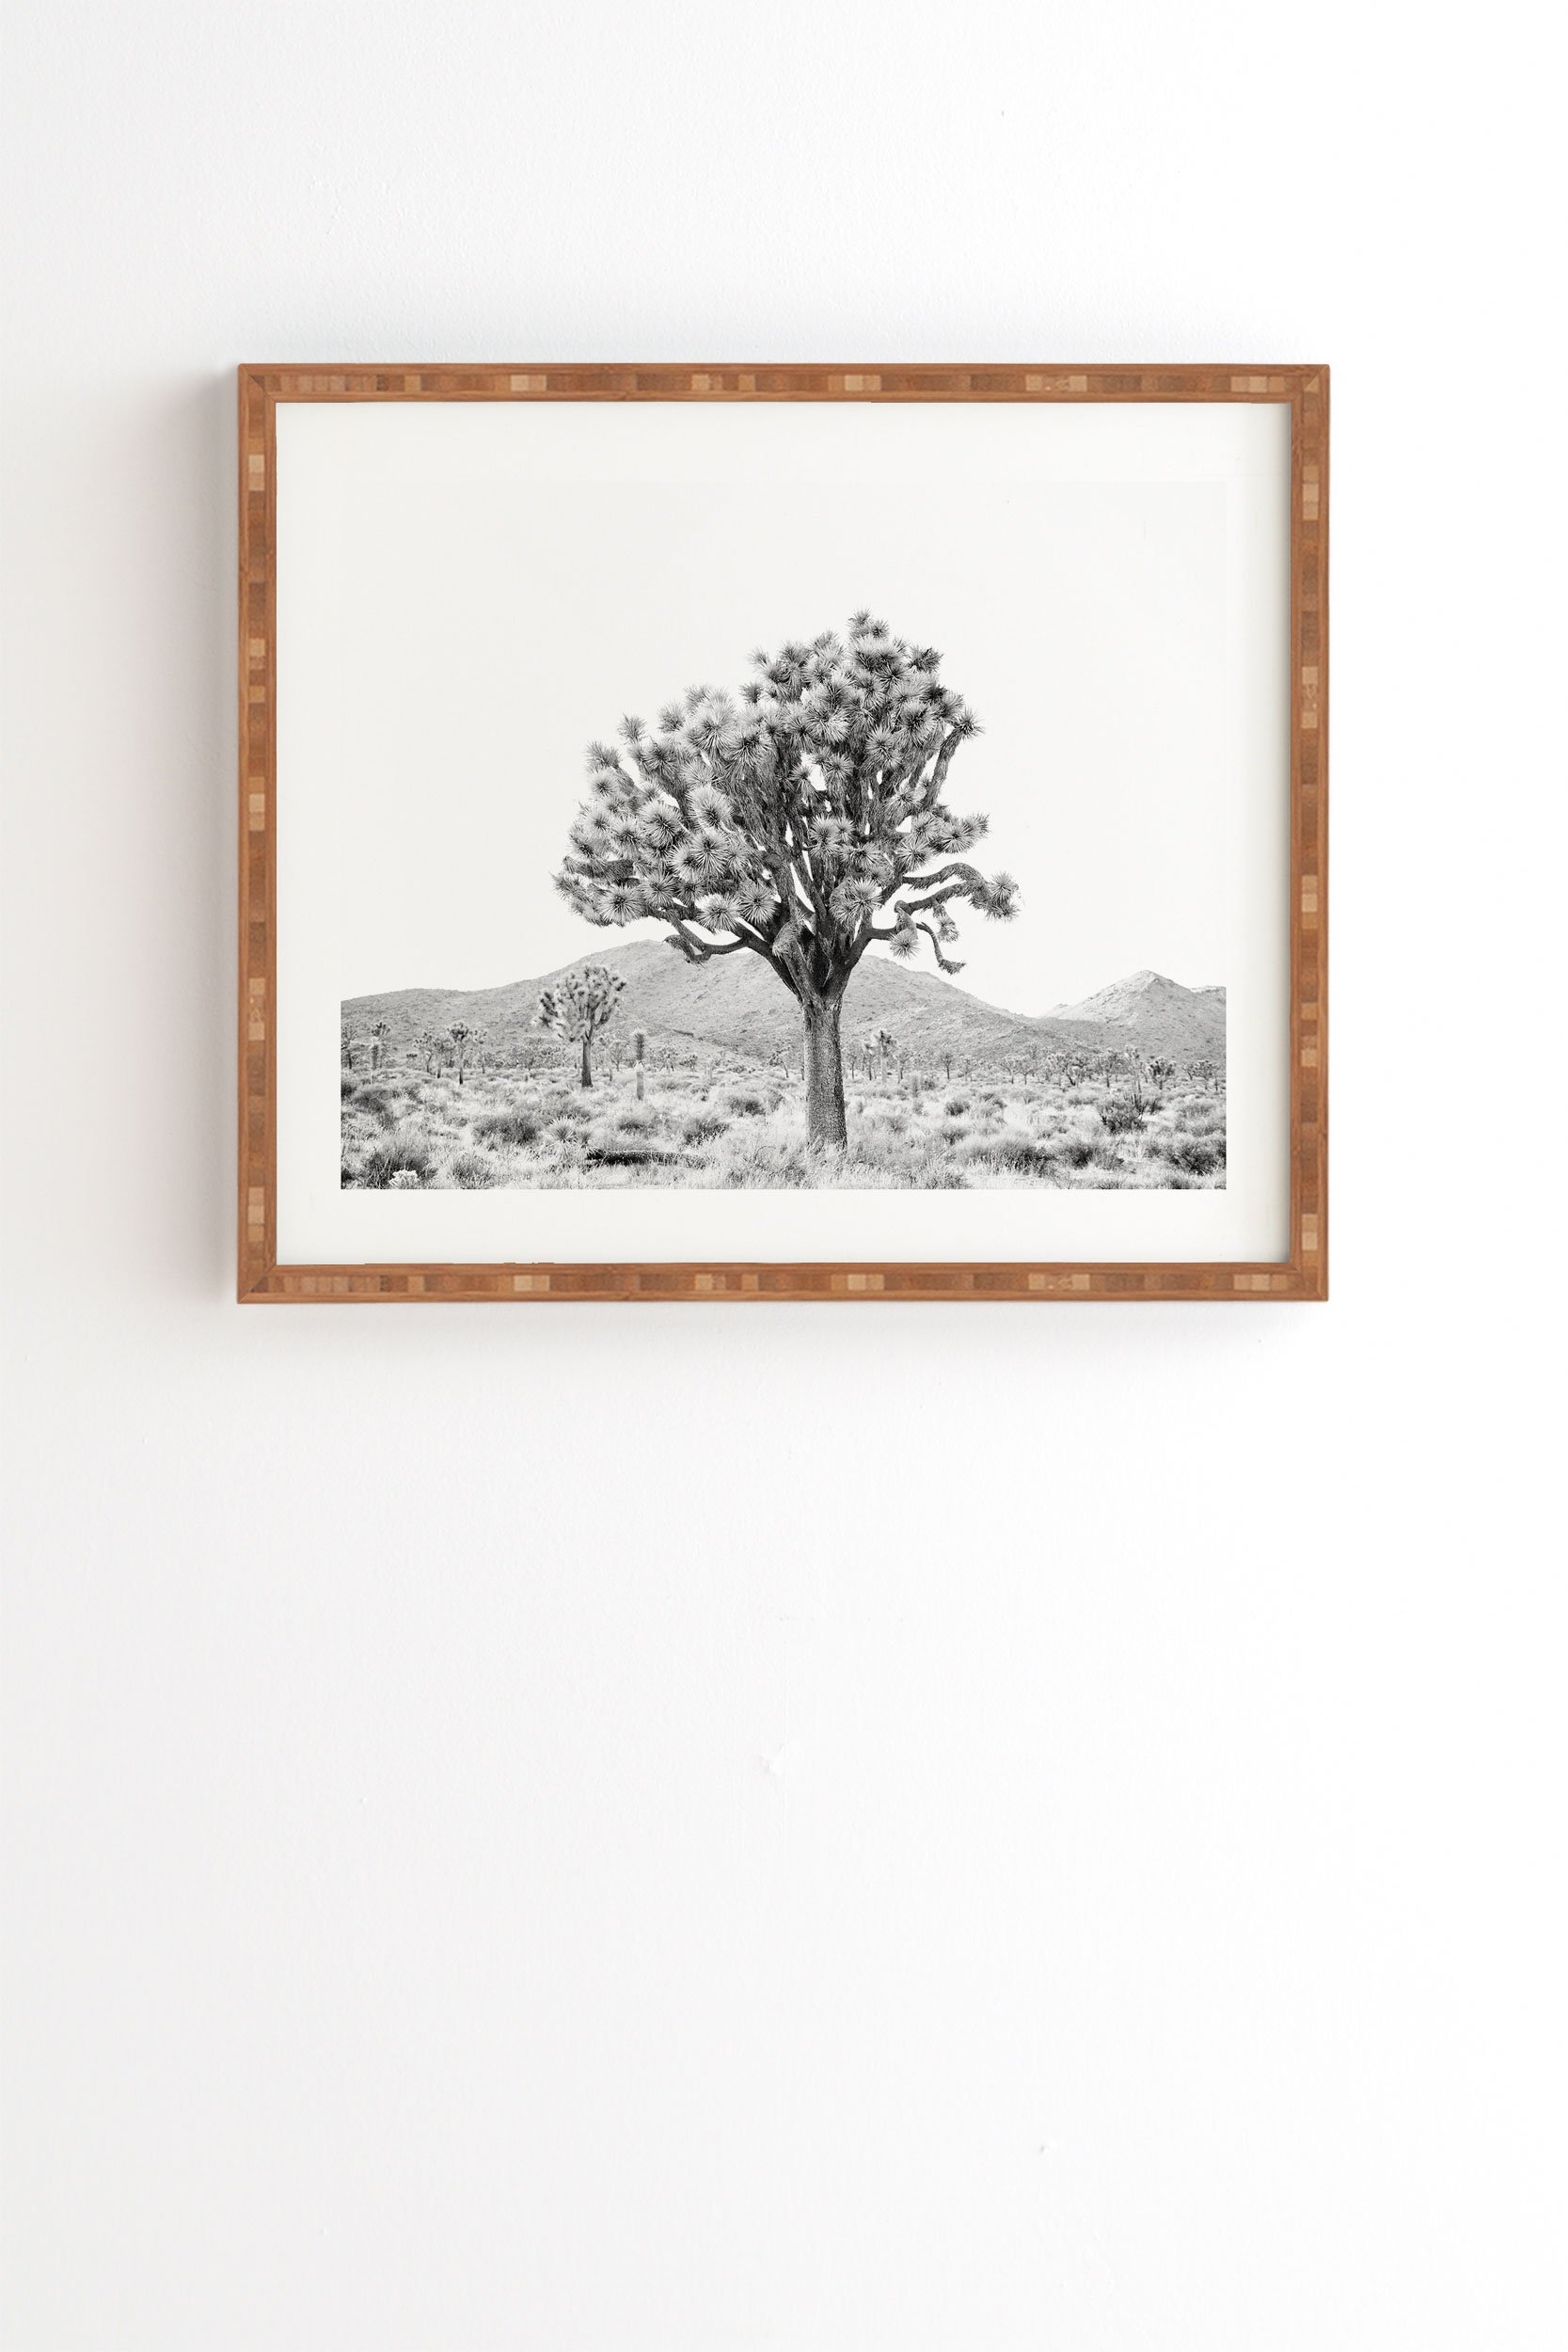 Bree Madden The Desert Framed Wall Art - 14" x 16.5" - Image 0